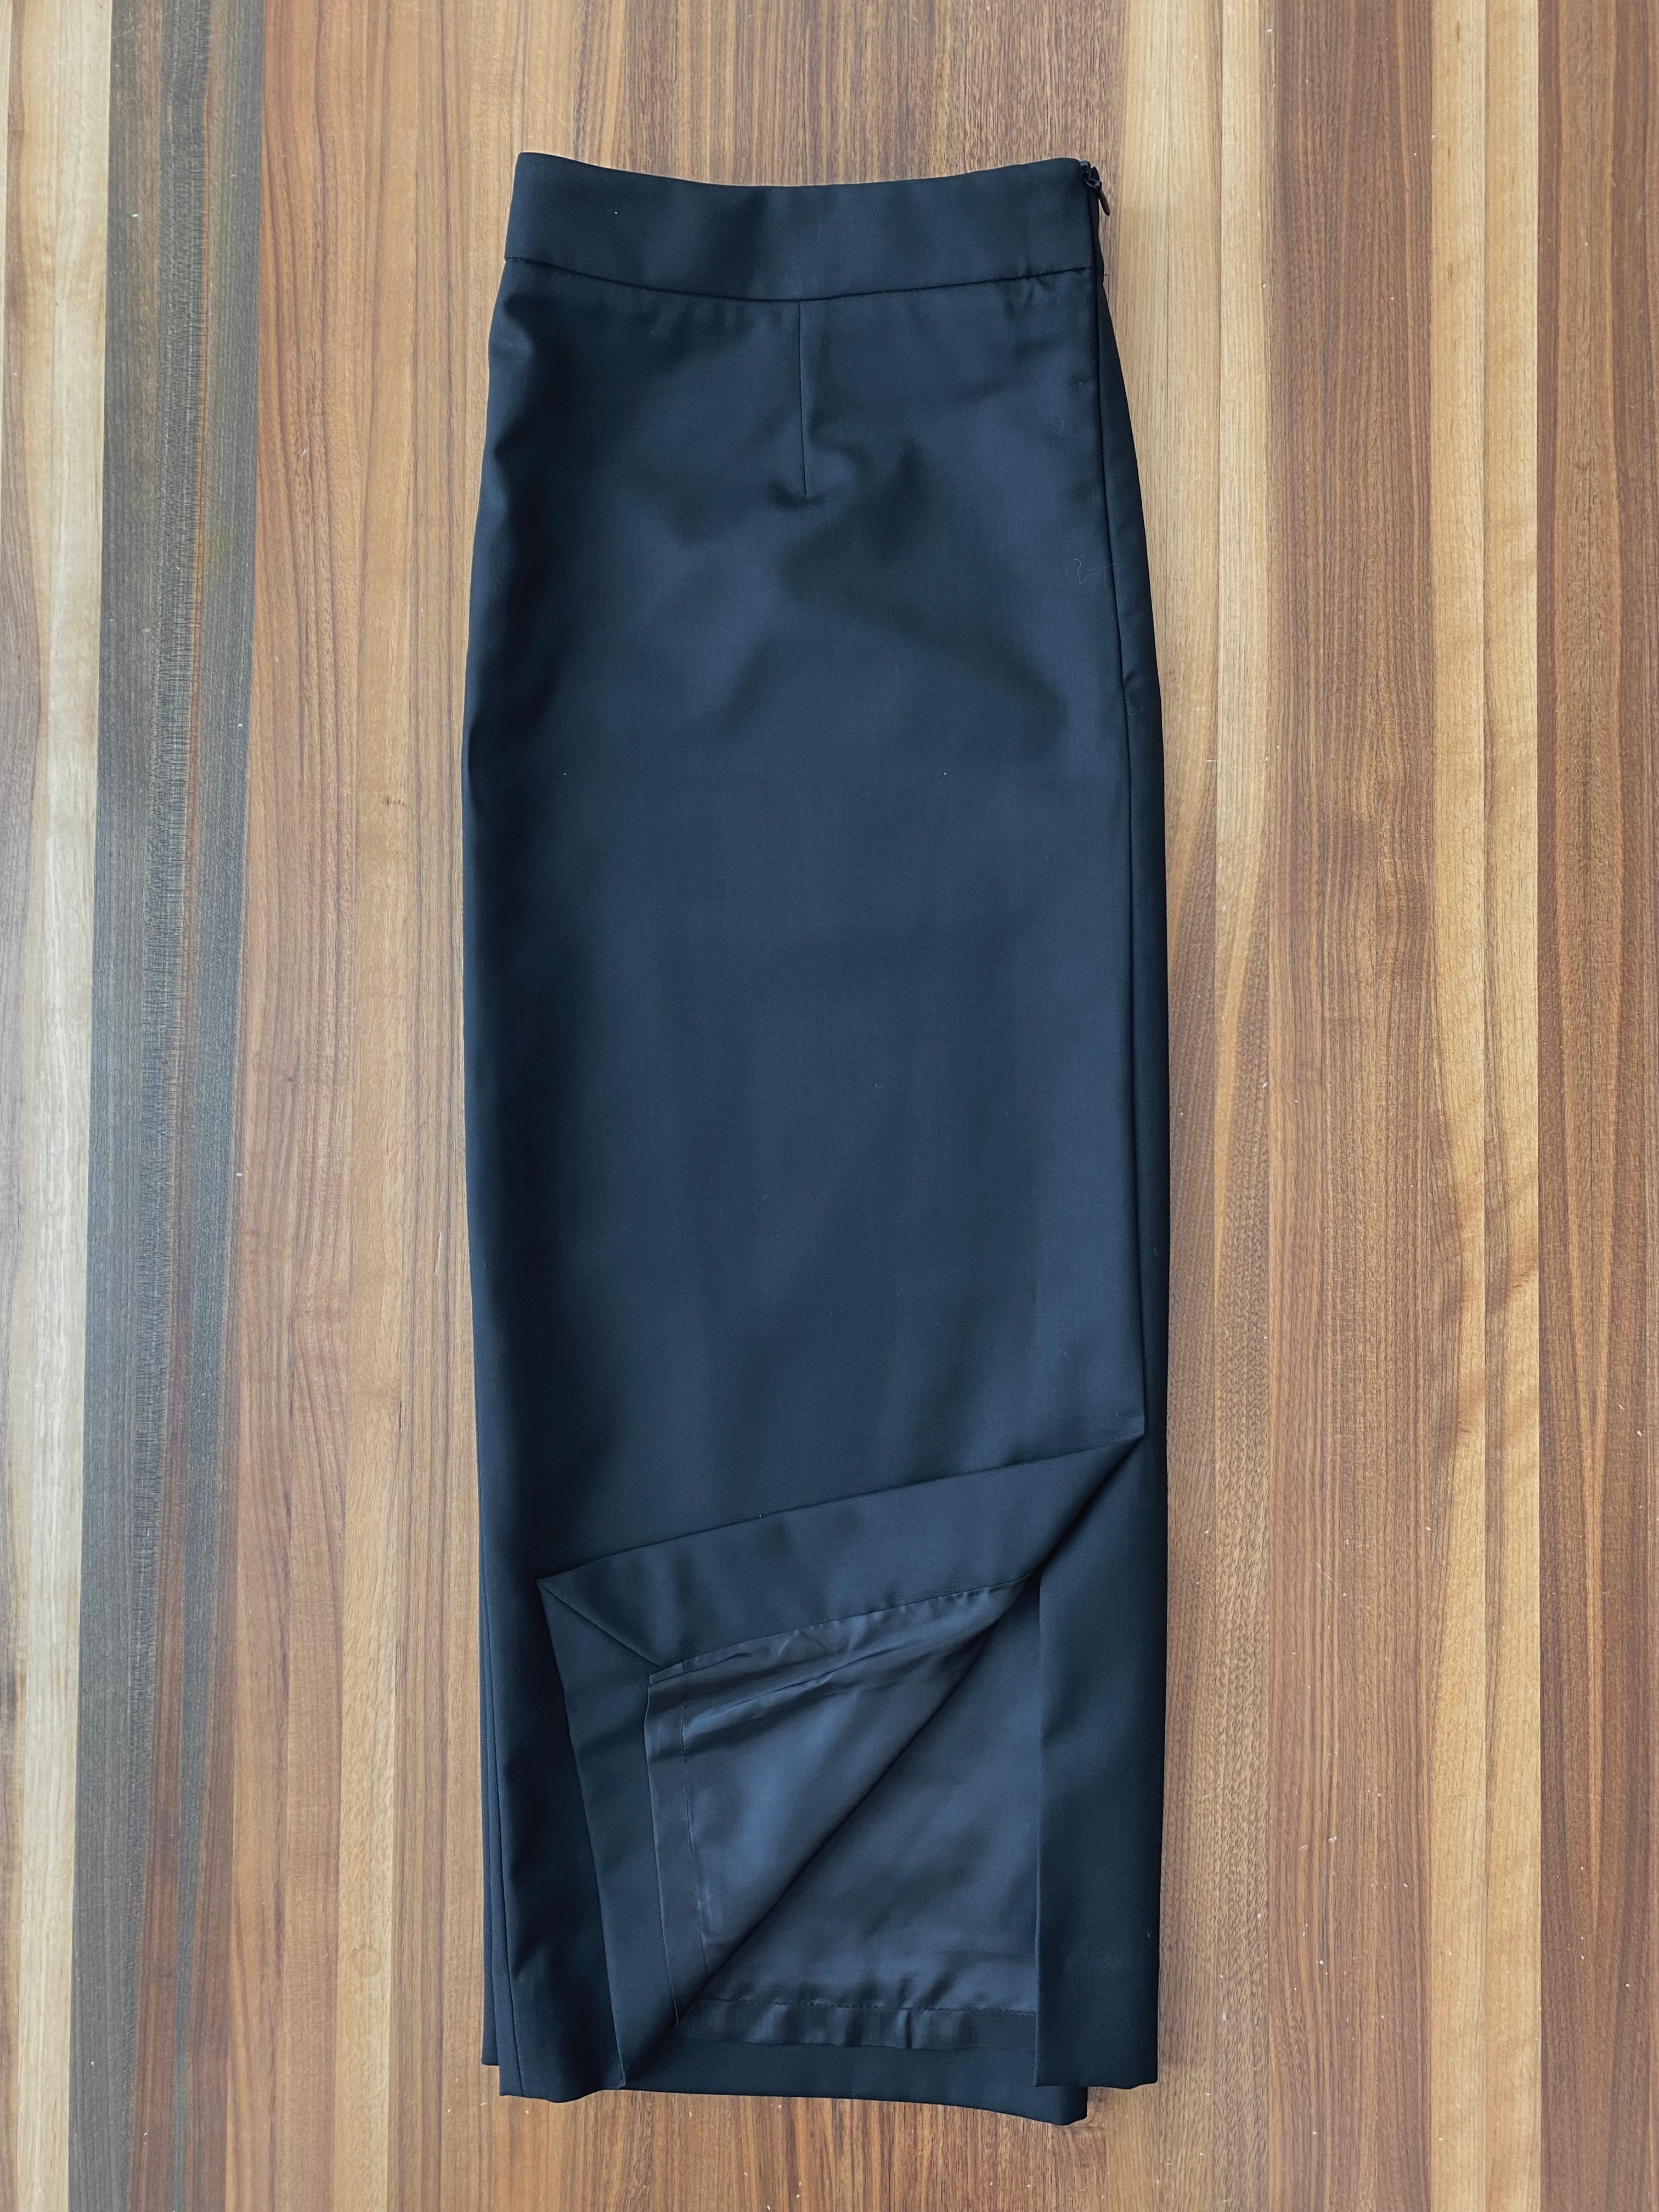 Custom Skirt- Blacks